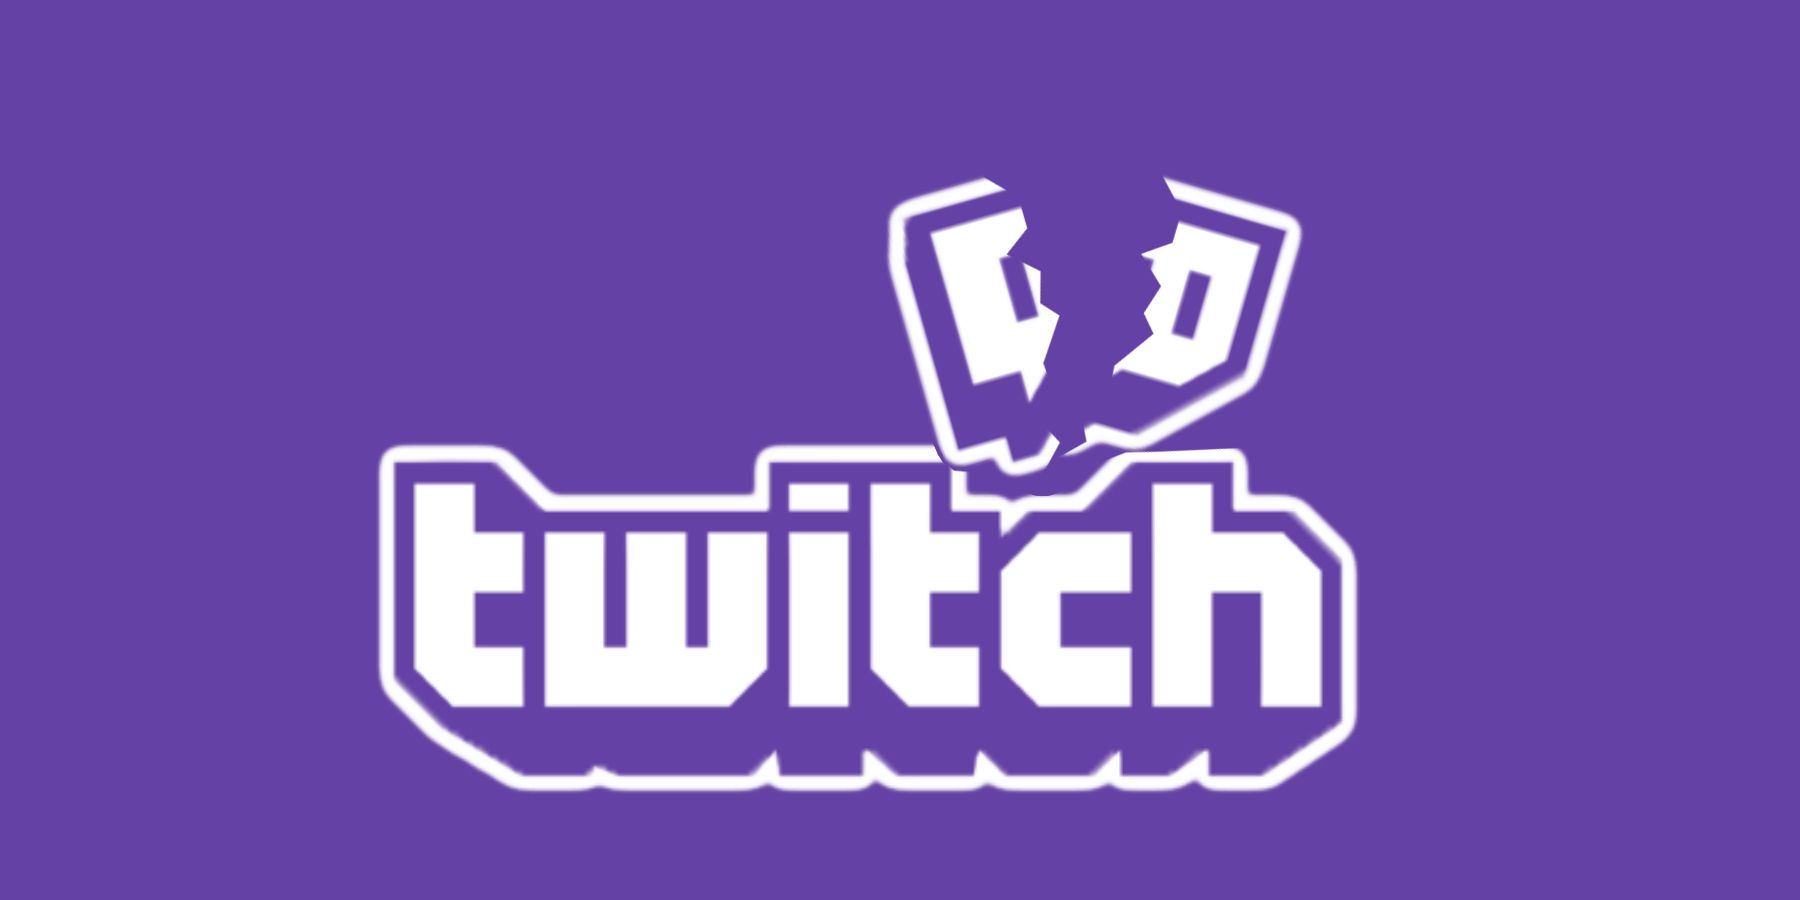 twitch-logo-broken